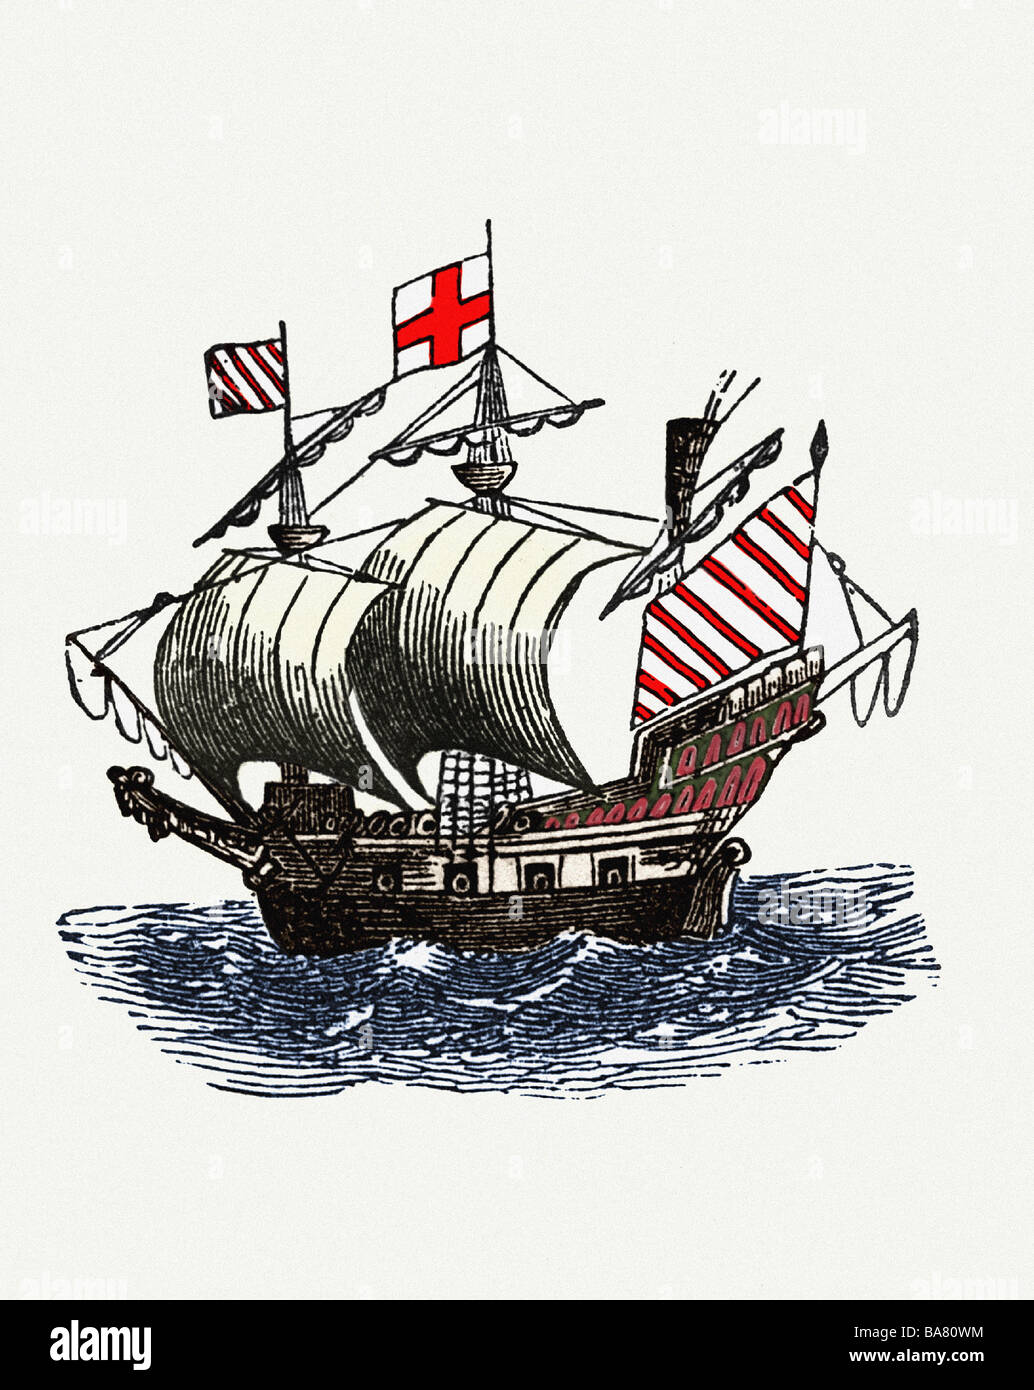 Raleigh, Walter, 1552 - 29. 10.1618, navigateur anglais et auteur/écrivain, son navire, image historique, gravure en bois, XIXe siècle, plus tard coloré, Banque D'Images